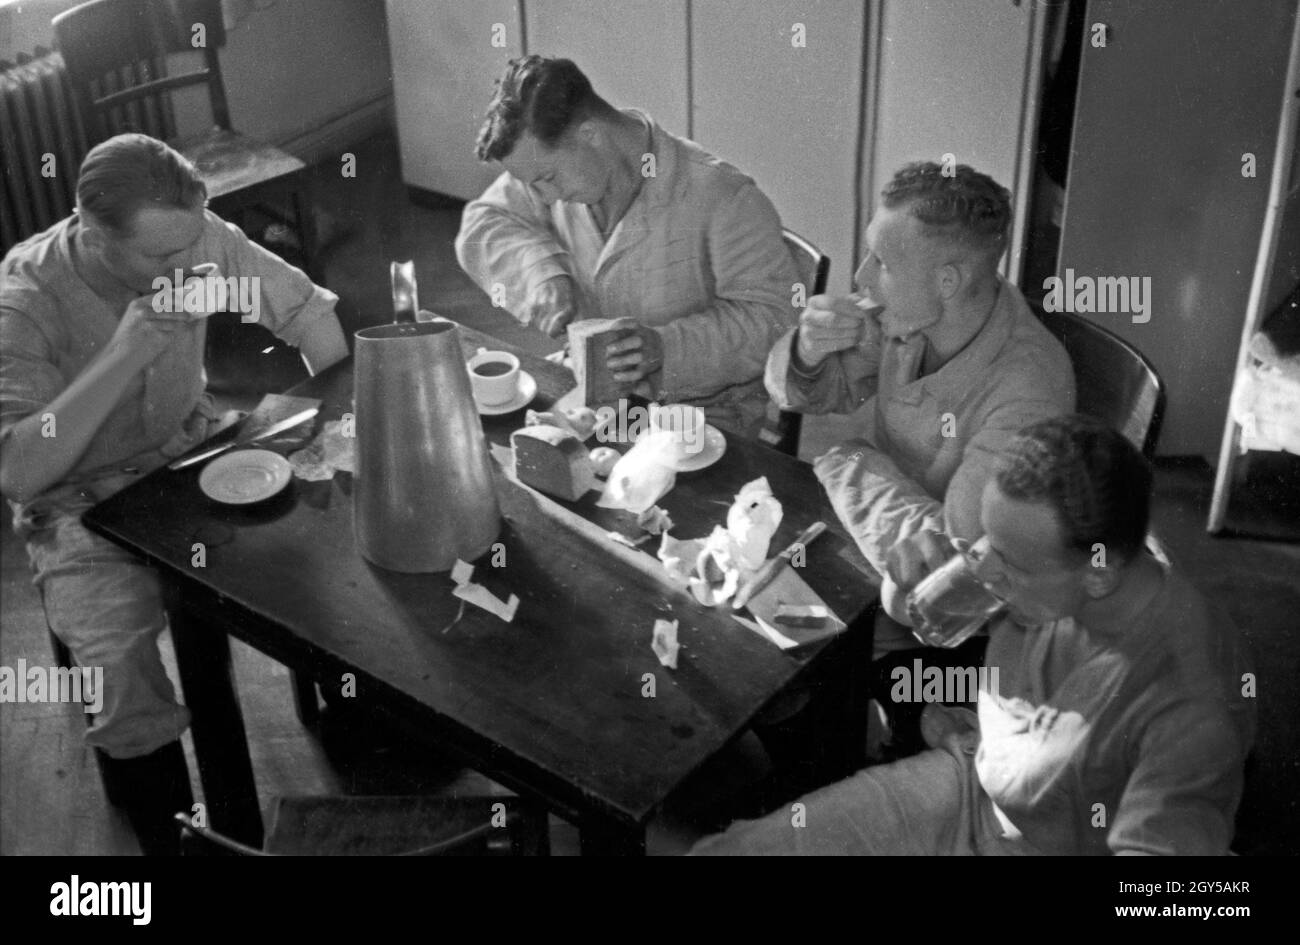 Die Rekruten der Flieger Ausbildungsstelle Schönwalde bei einer Mahlzeit auf der Stube, Deutschland, 1930er Jahre. Recruits eating and drinking coffee, Germany 1930s. Stock Photo